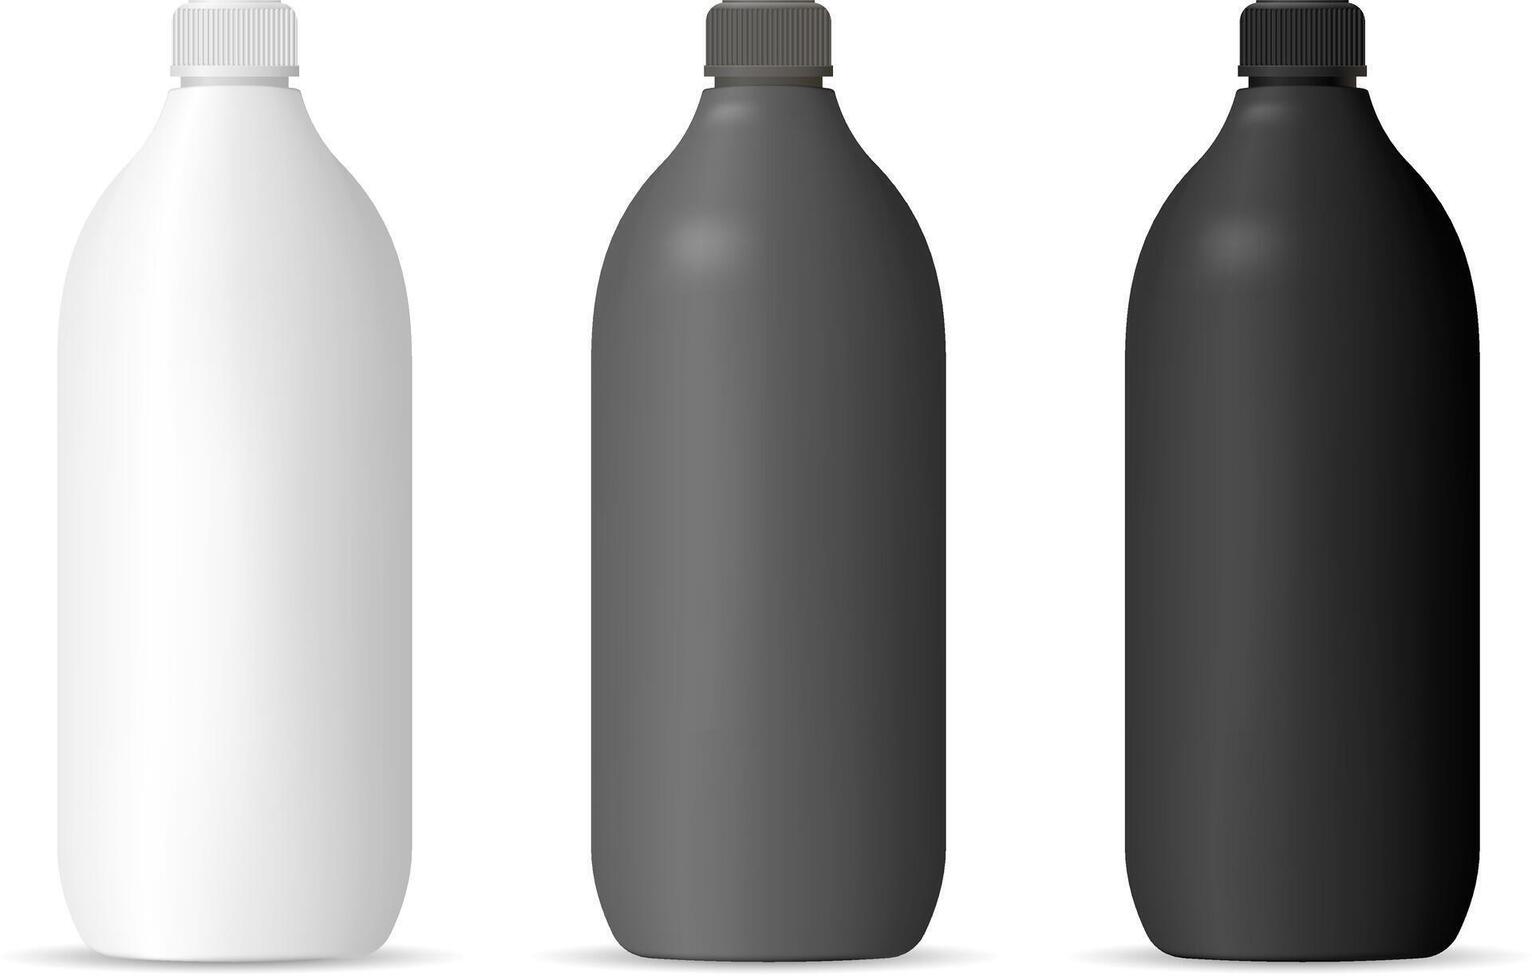 garrafas brincar conjunto para Cosmético ou família produtos. cilindro embalagem containers dentro fosco preto, branco ou cinzento cor plástico para xampu, gel, loção, cabelo e corpo produtos, química. vetor